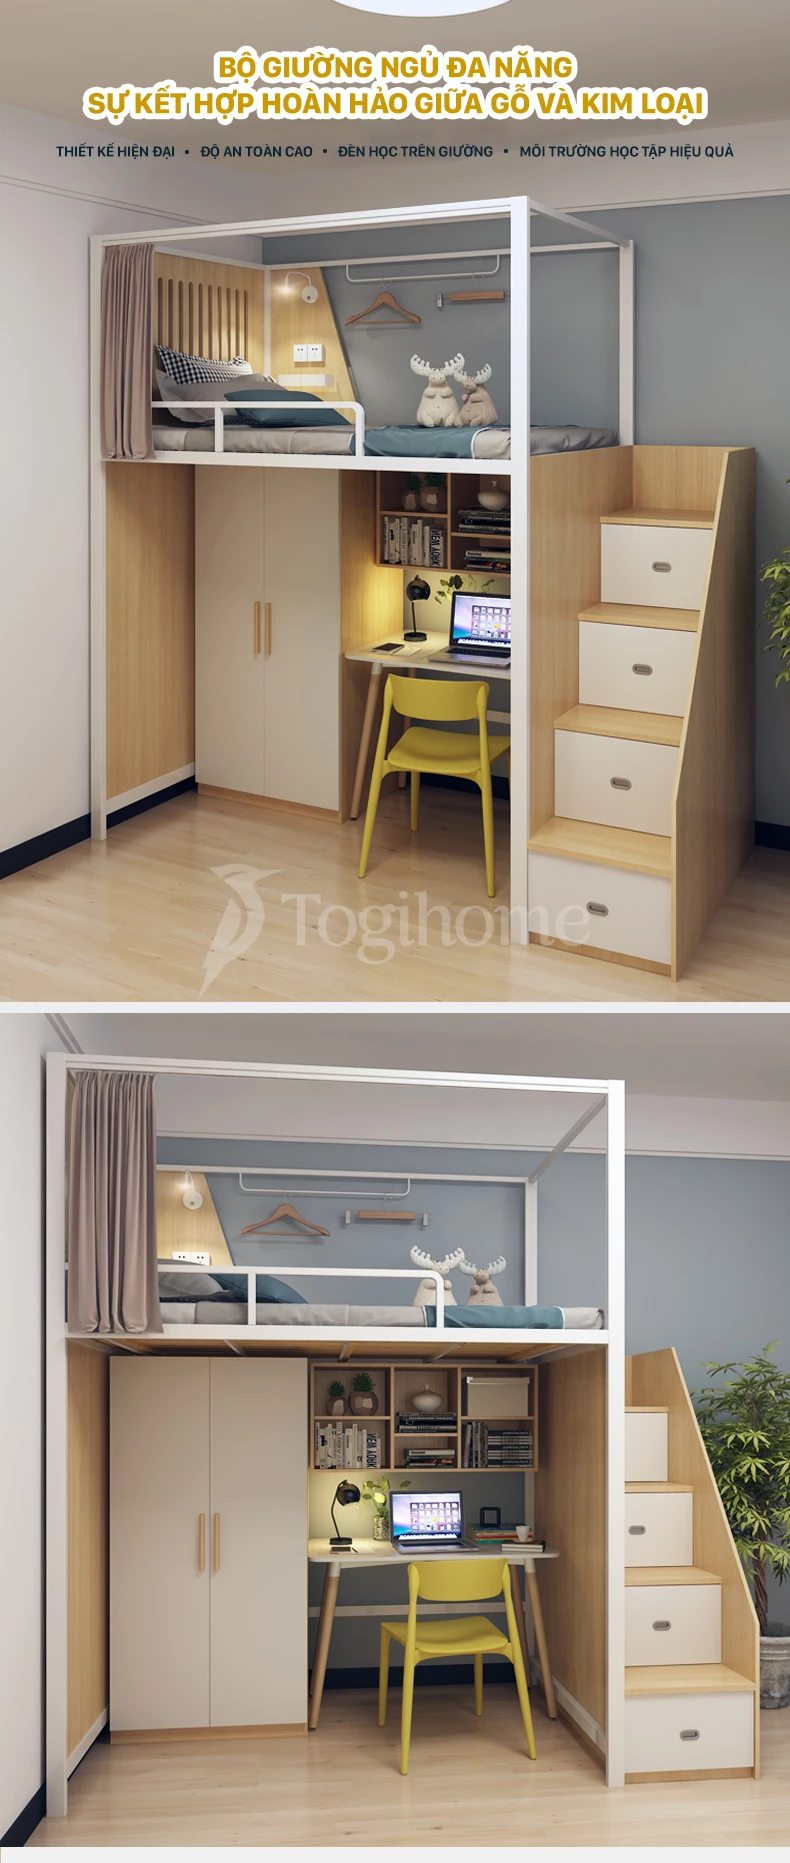 Bộ giường gỗ thép GSTE007 kết hợp tủ/bàn làm việc và tủ thang đa năng, phong cách Bắc Âu với thiết kế tối giản hiện đại